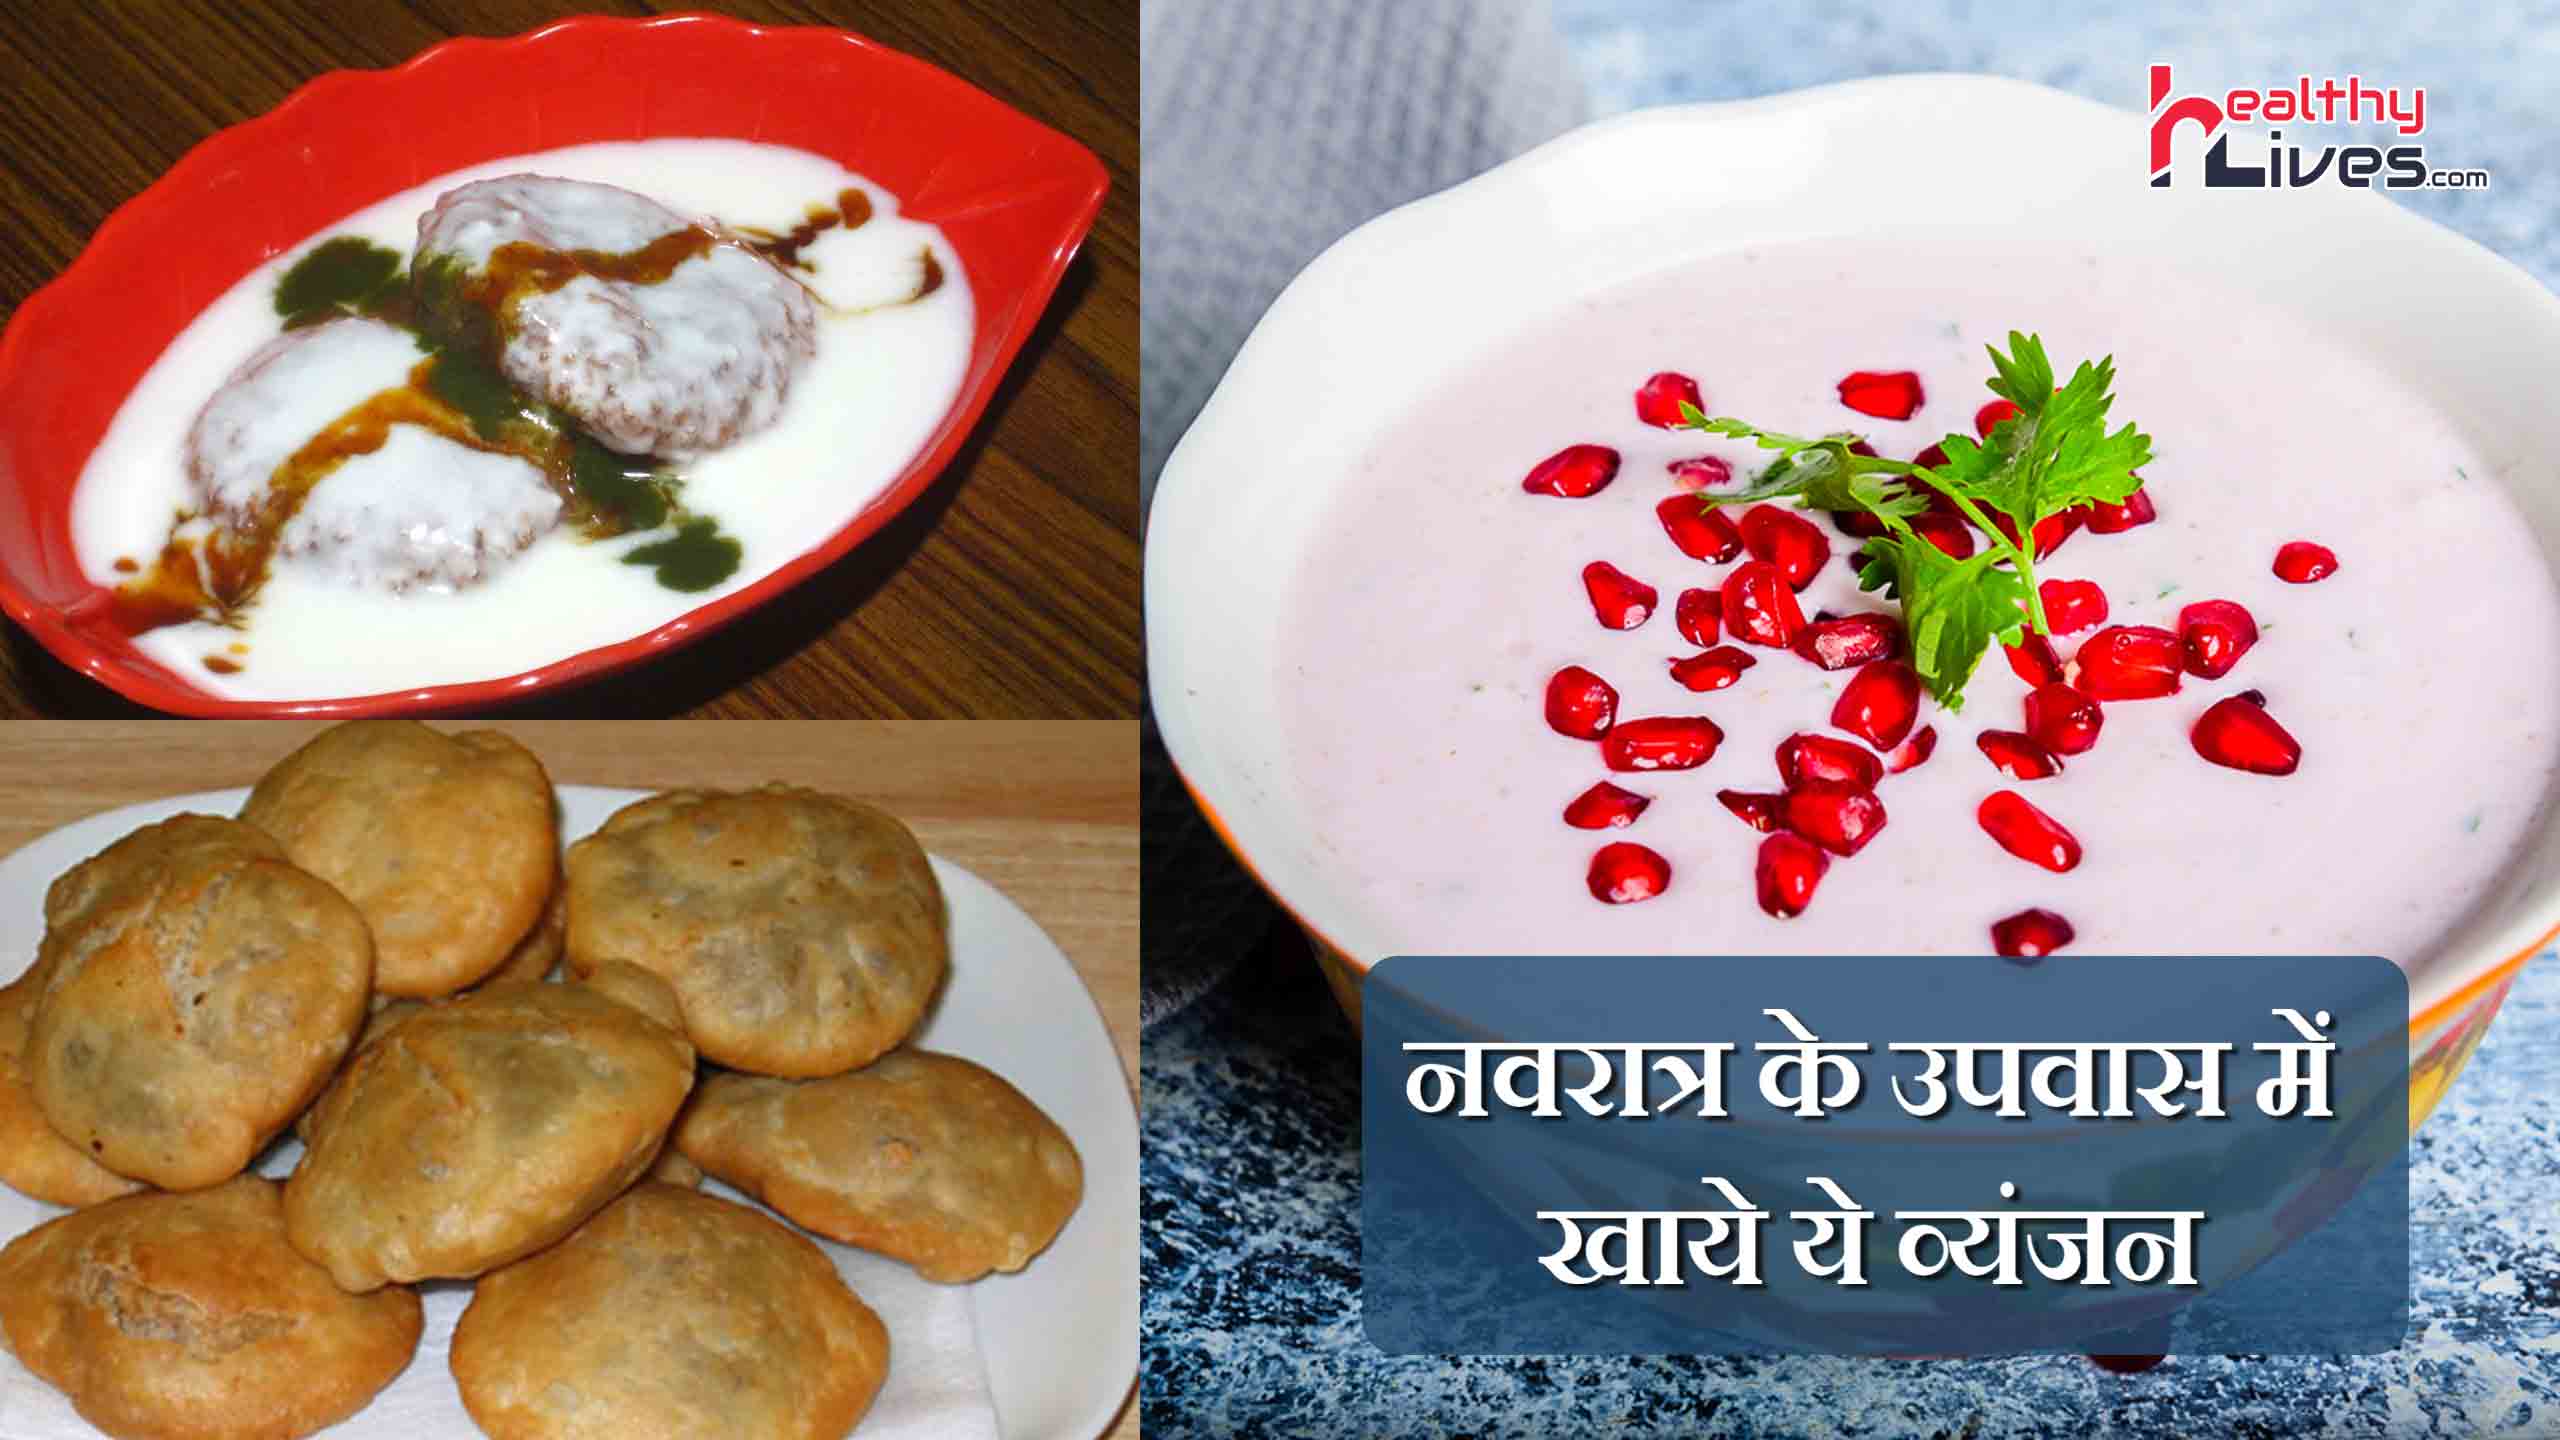 Navratri Recipes in Hindi: एनर्जेटिक रहने के लिए उपवास में खाए ये आहार